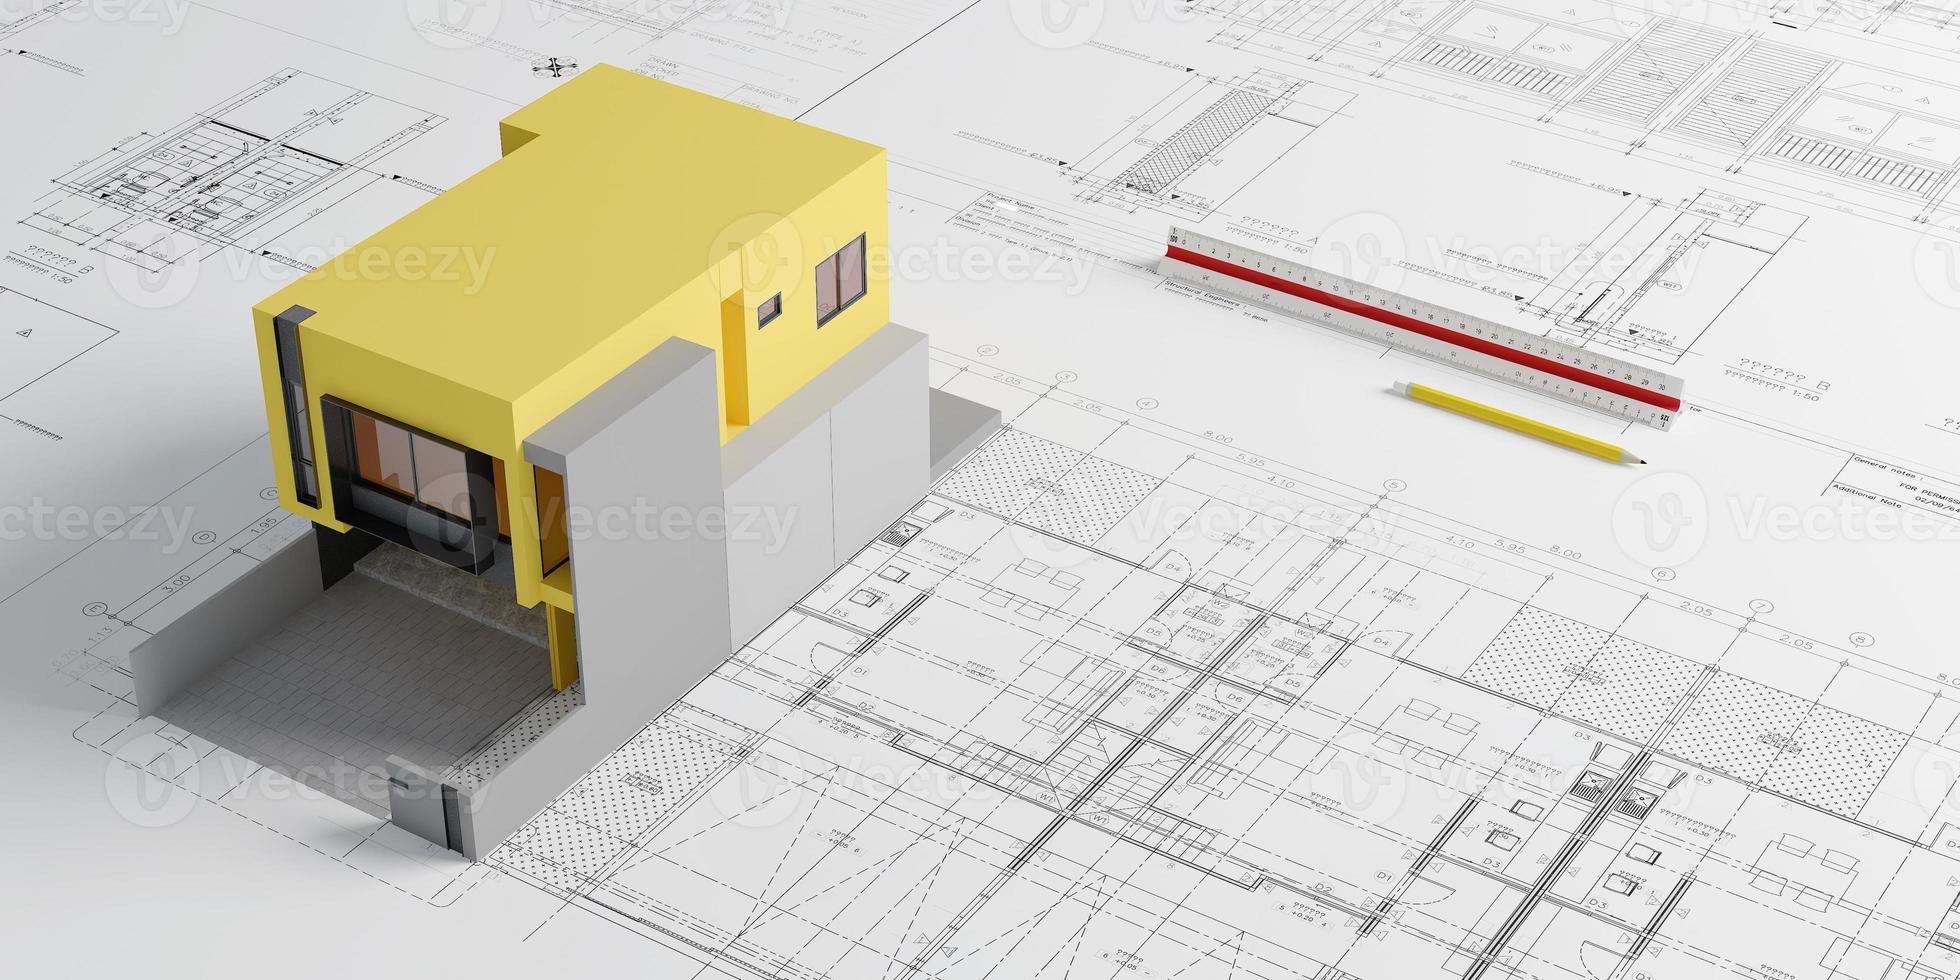 planos de planos y modelo de casa amarilla con regla de escala y lápiz.concepto de arquitecto.representación 3d foto